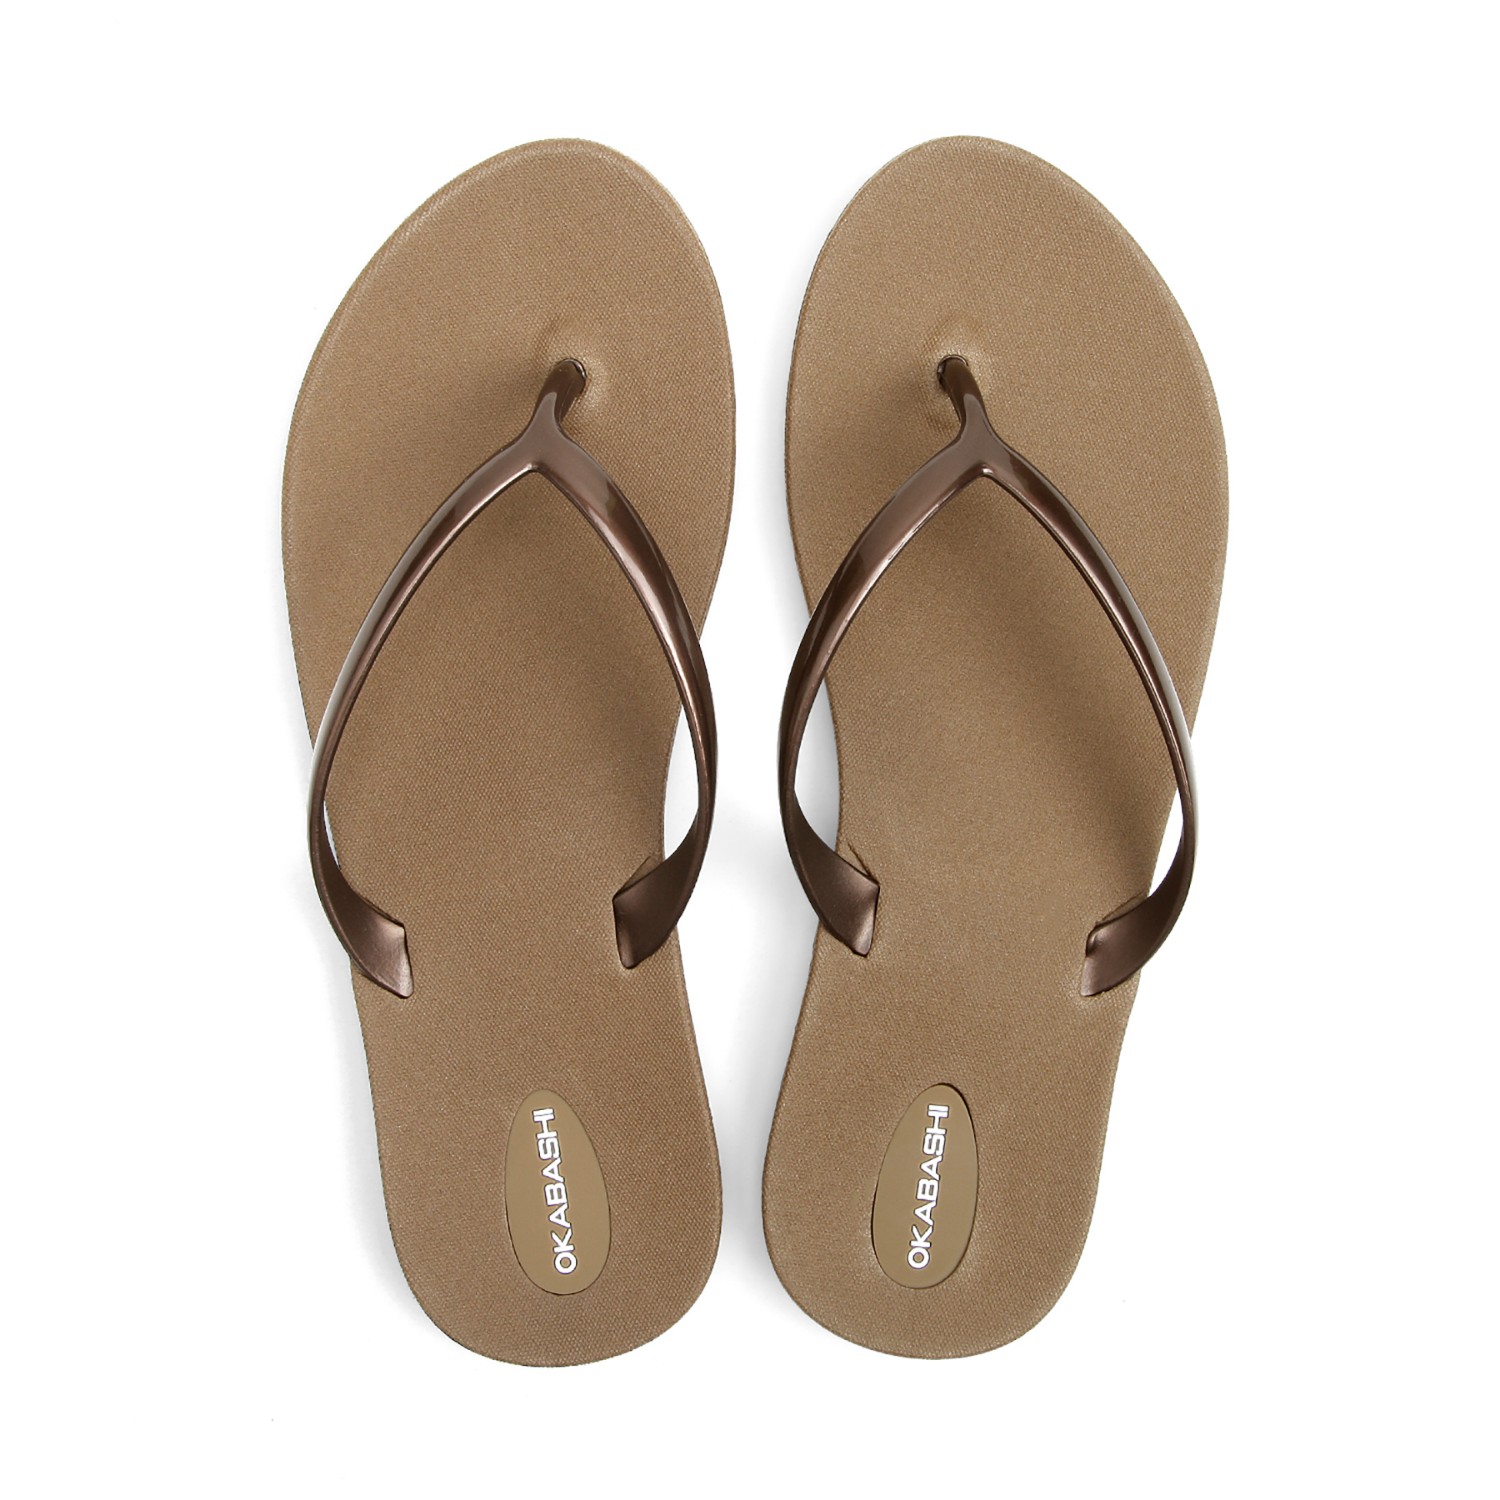 Solemates - Buy Men’s Women’s Sandals online shopping in UAe | Buy ...